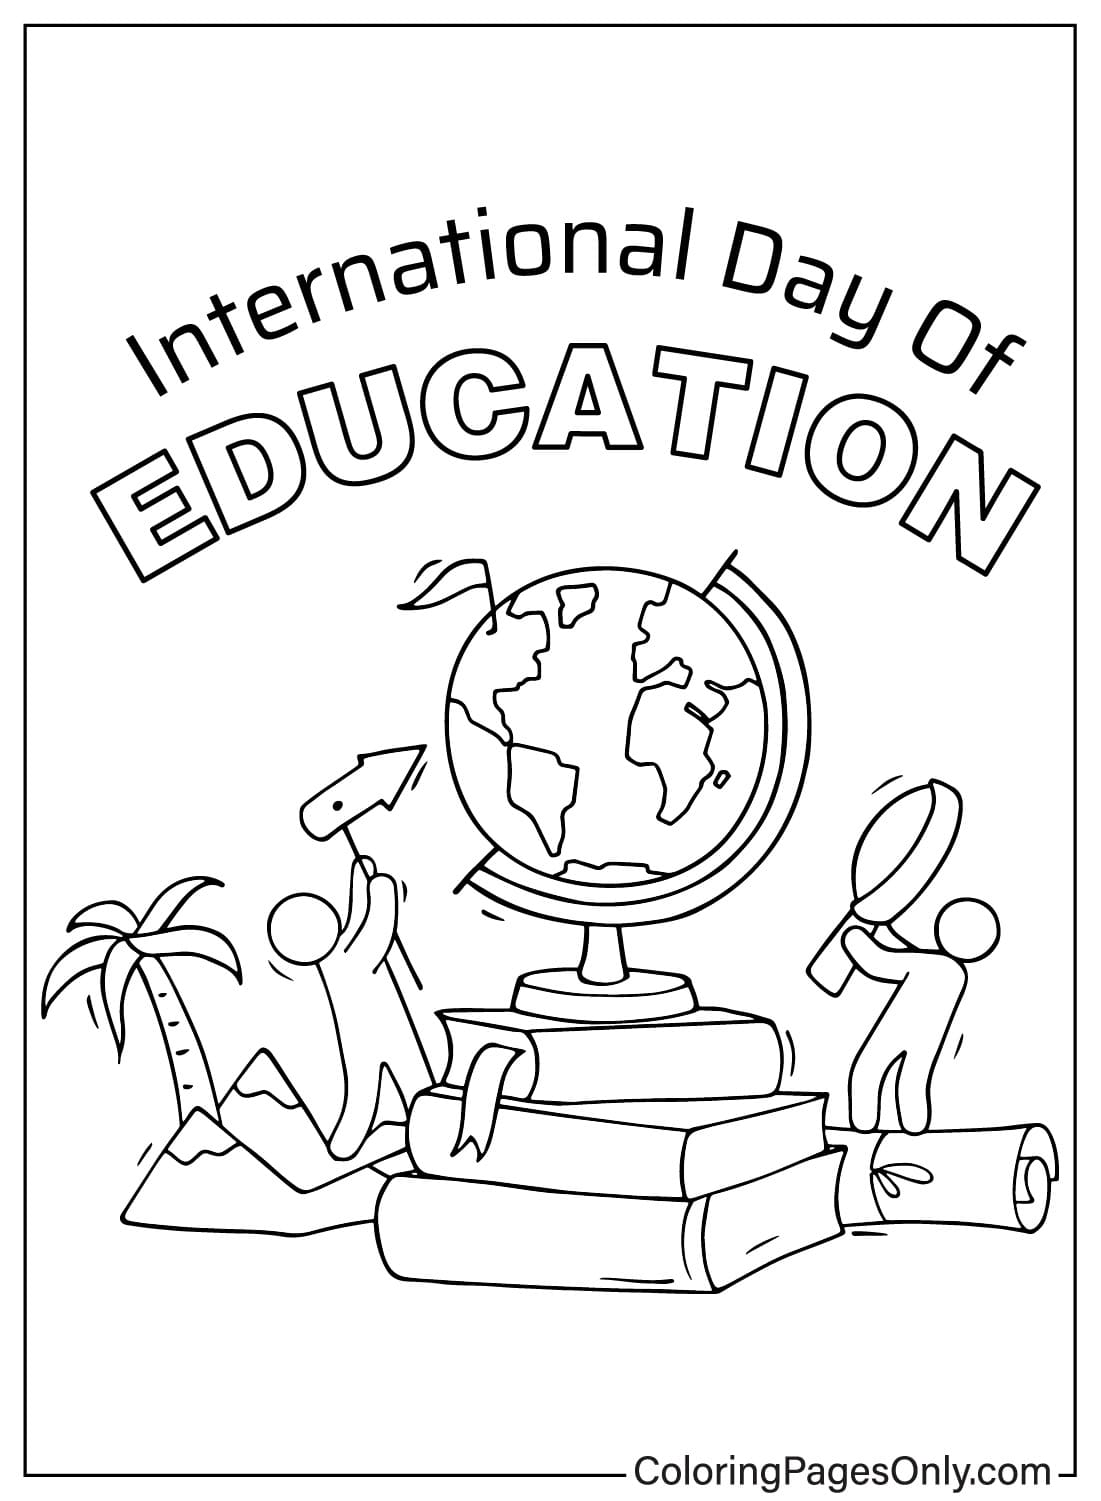 صفحة تلوين اليوم العالمي للتعليم قابلة للطباعة مجانًا من اليوم العالمي للتعليم